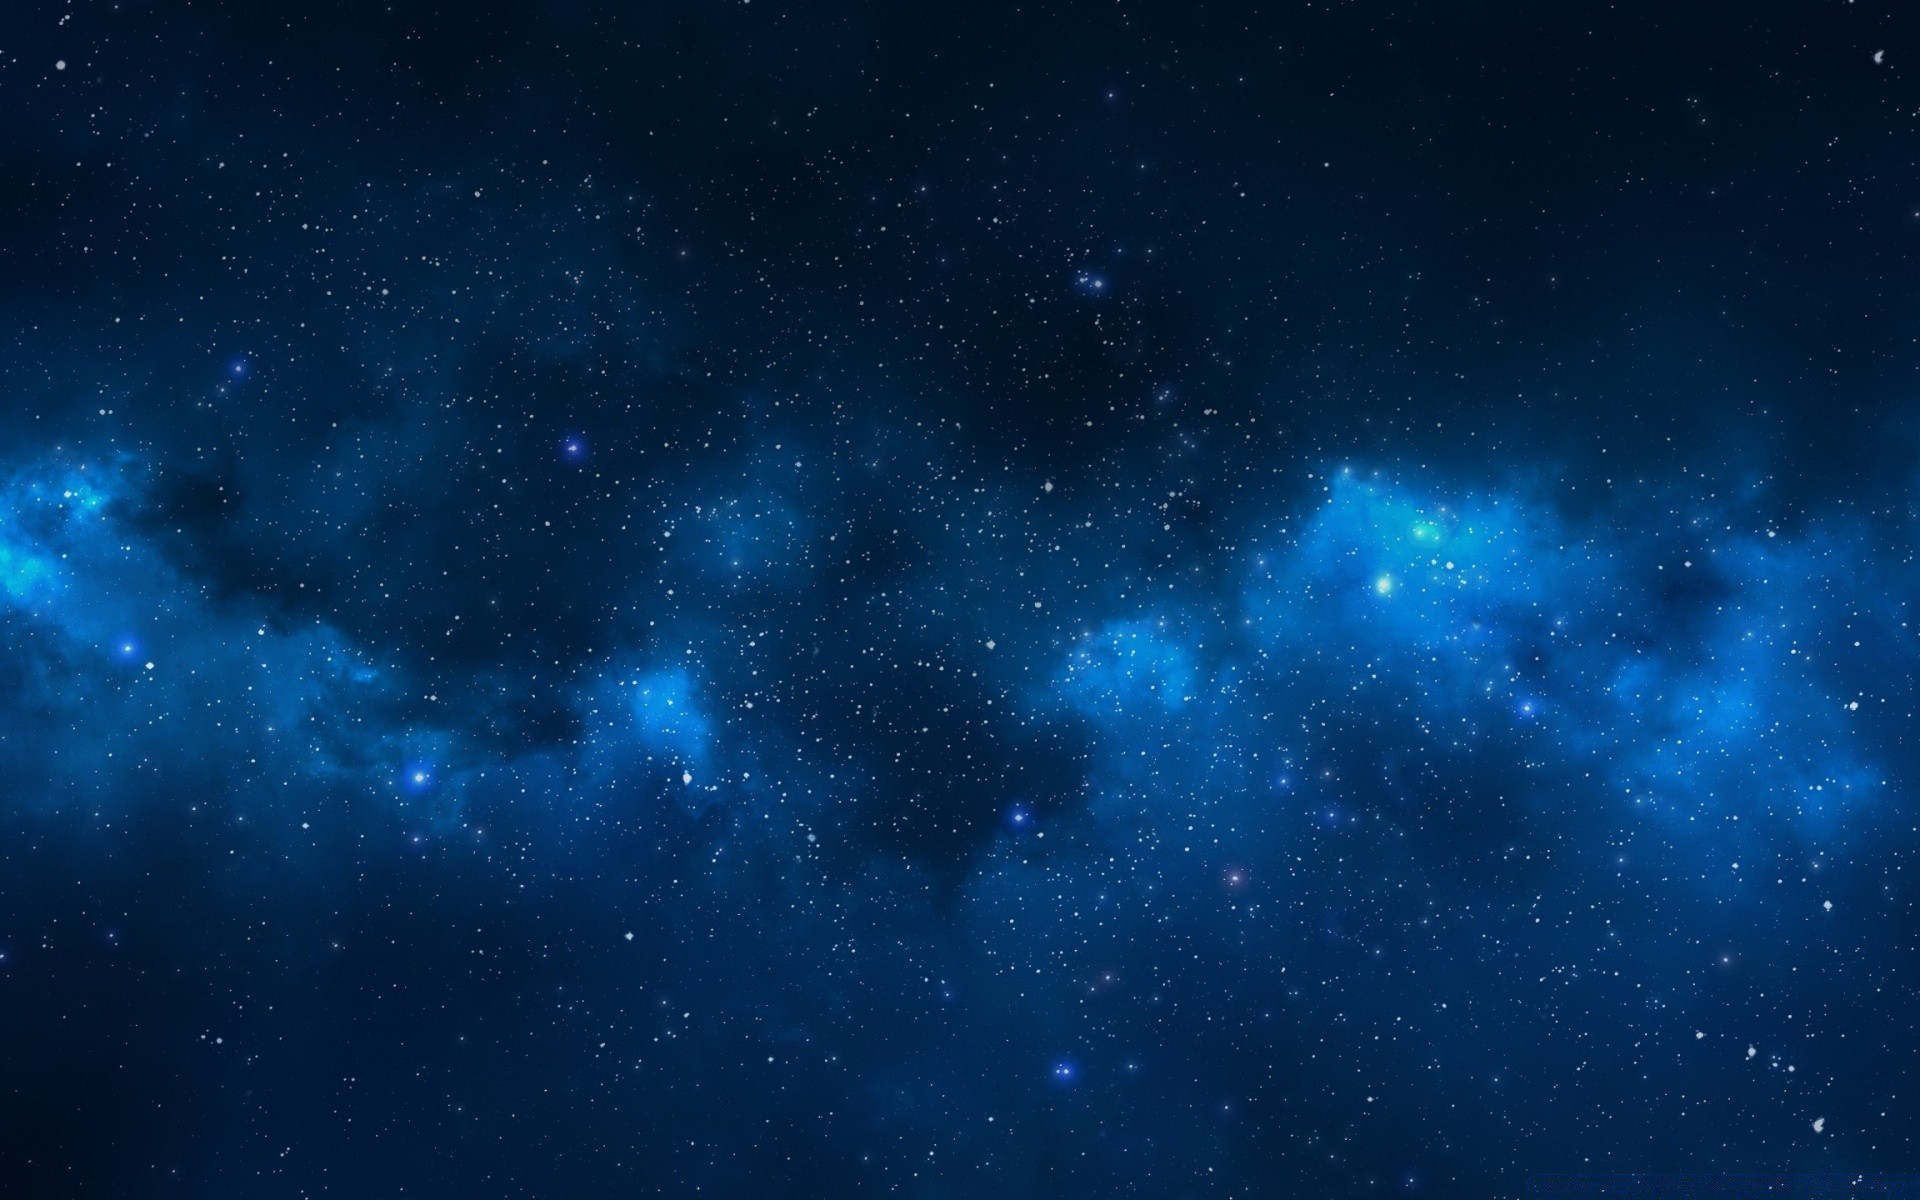 космос астрономия созвездие галактика туманность бесконечность орион разведка астрология луна пыль темный космос телескоп стеллар небо глубокий огромный тайна звездное